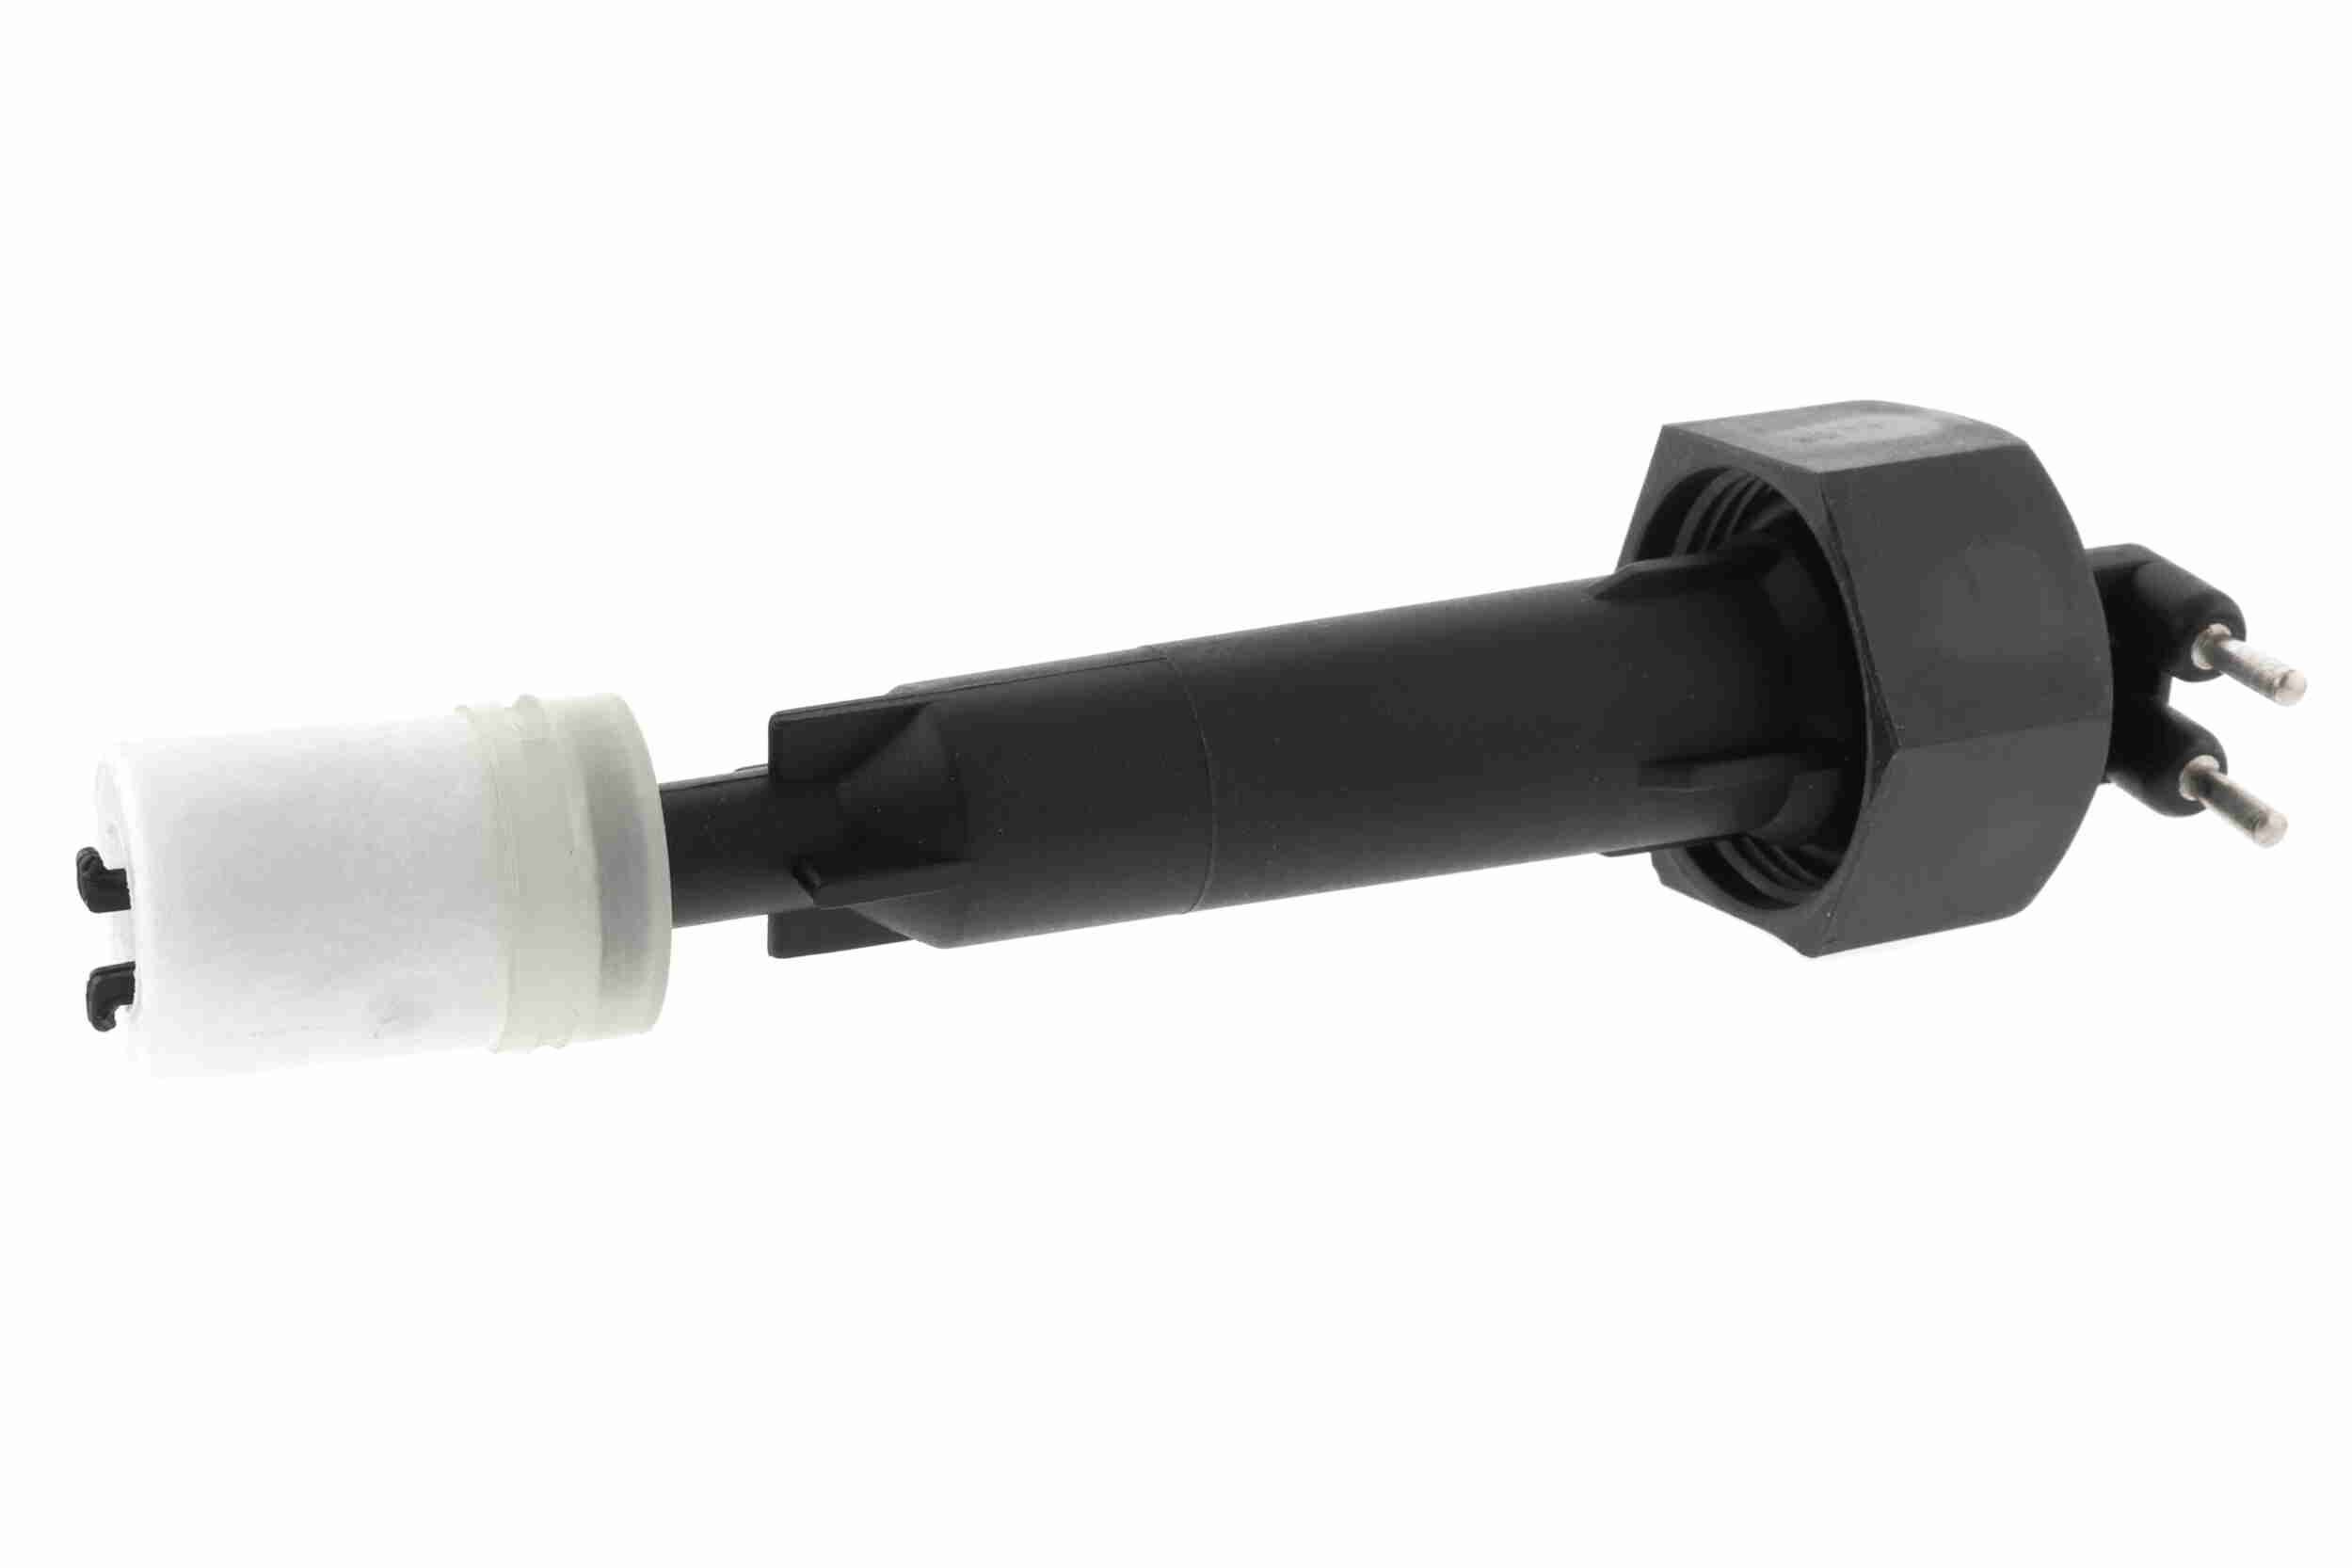 Kühlmittelstand-Sensor für Golf 4 kaufen - Original Qualität und günstige  Preise bei AUTODOC